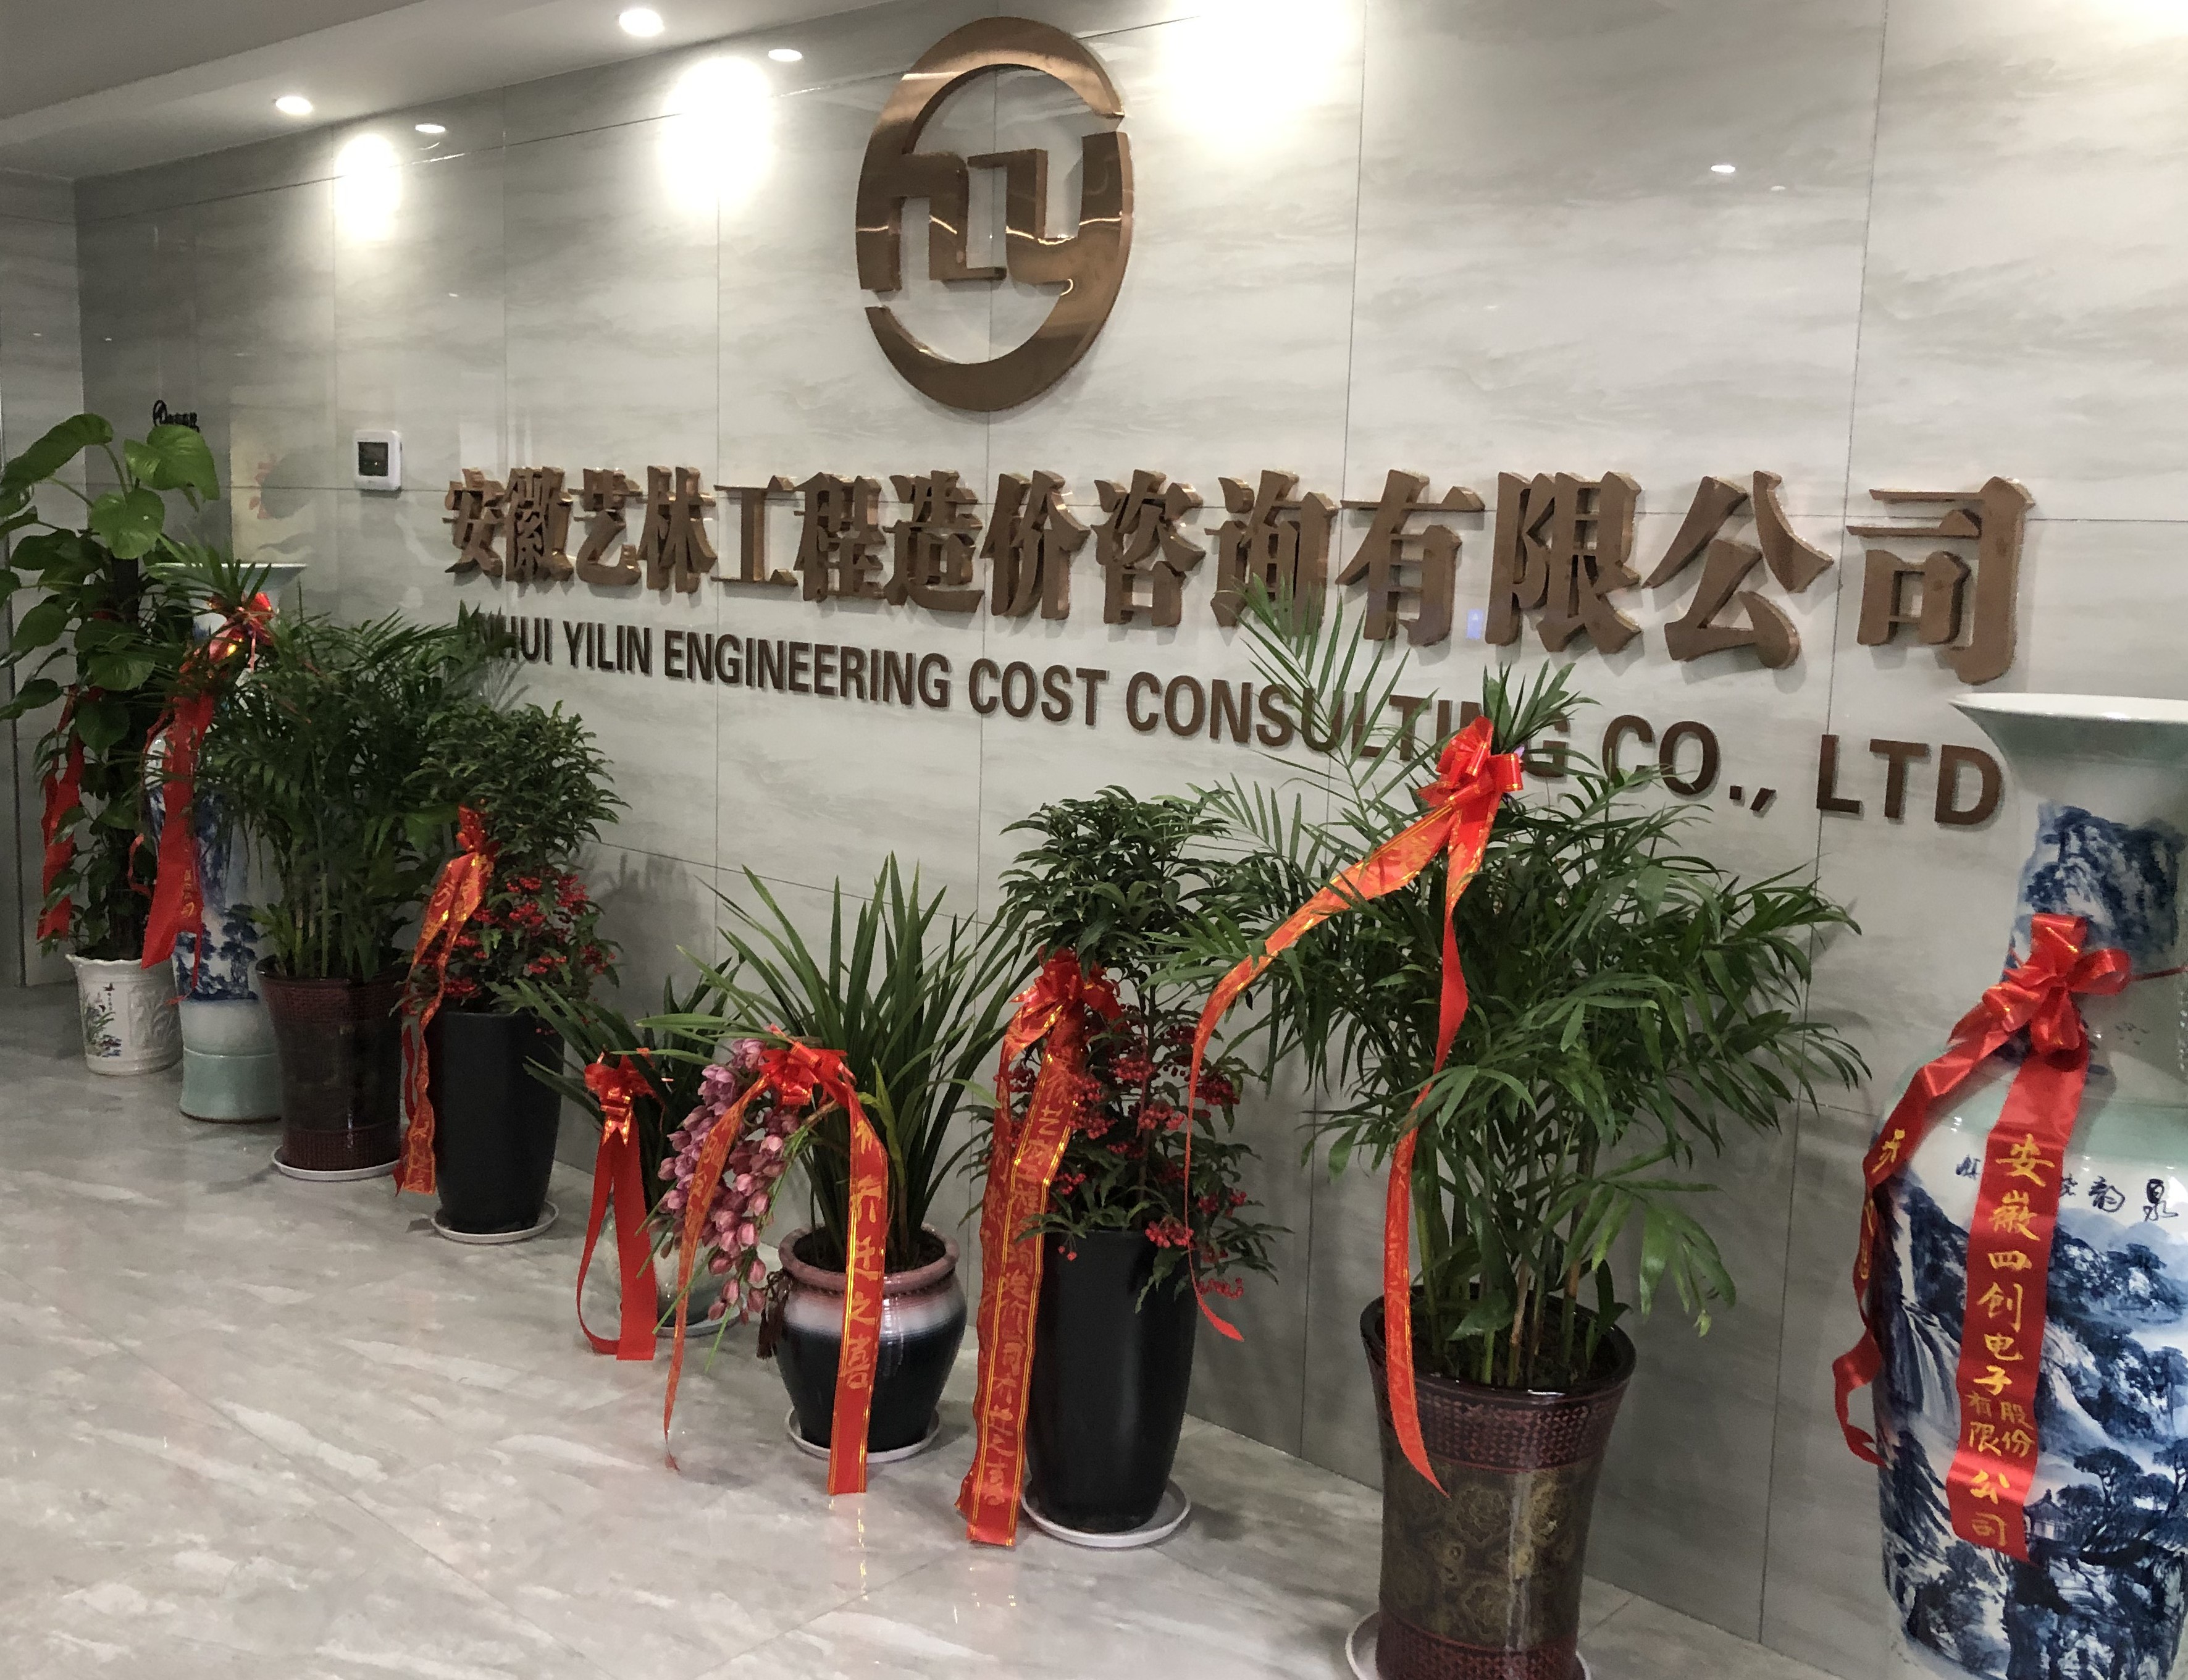 安徽艺林工程造价咨询有限公司迁址公告